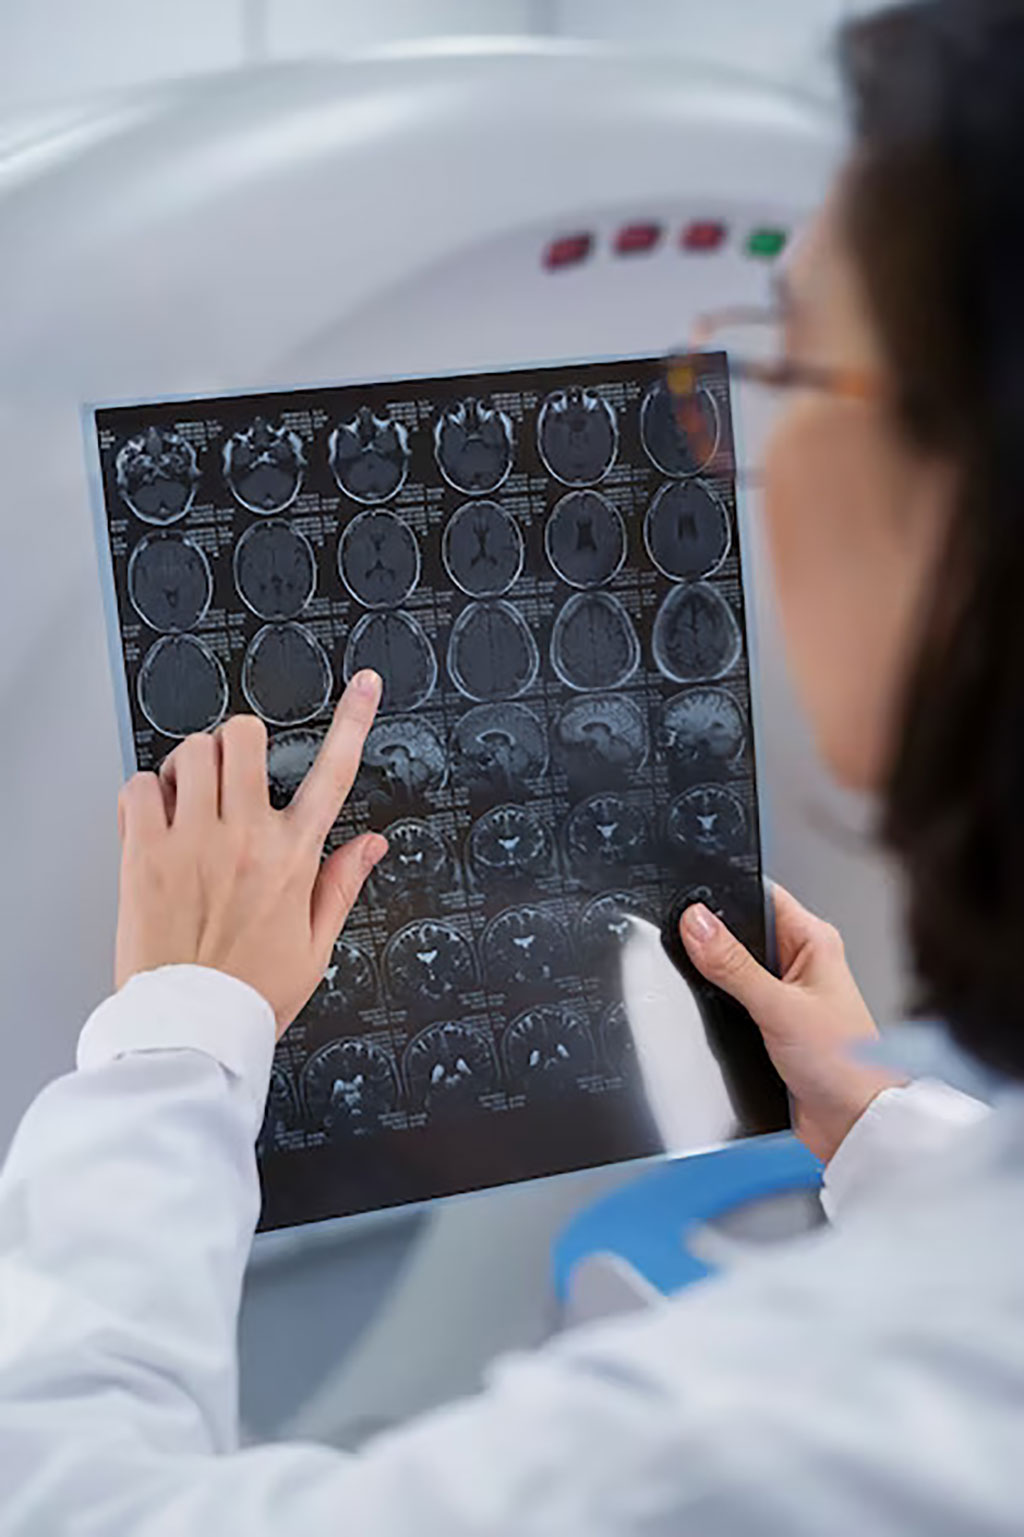 Imagen: Las imágenes PET pueden ayudar a los médicos a predecir los resultados de supervivencia para pacientes con tumores cerebrales (Fotografía cortesía de Freepik)